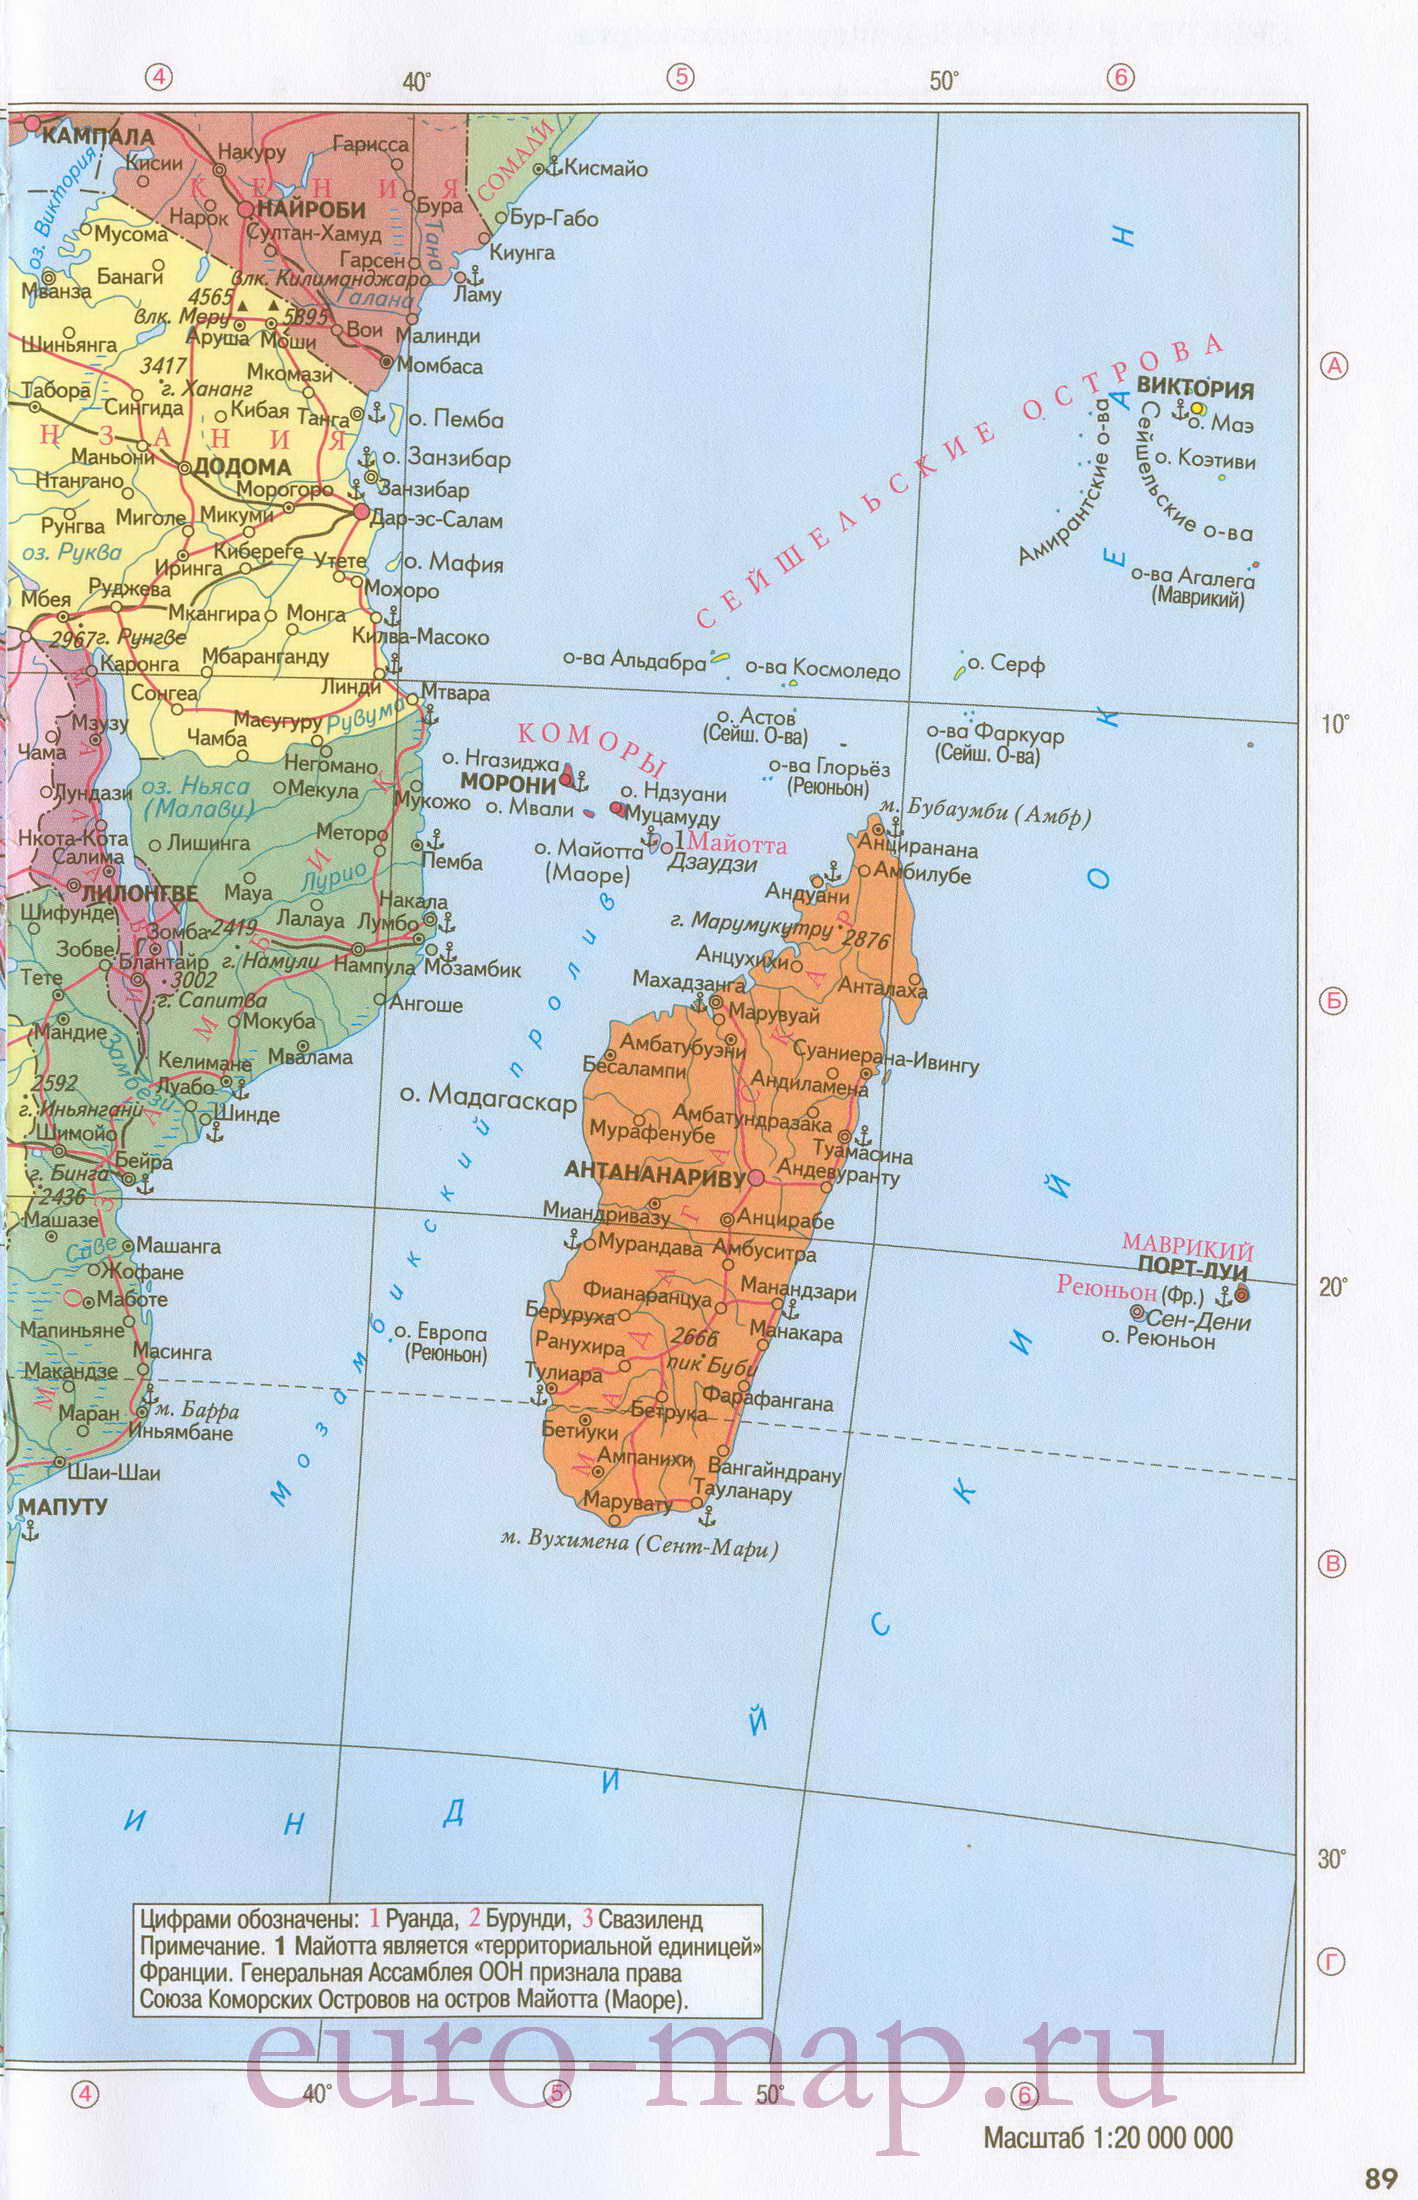 Карта южной Африки. Политическая карта стран южной Африки на русском языке, B0 - 